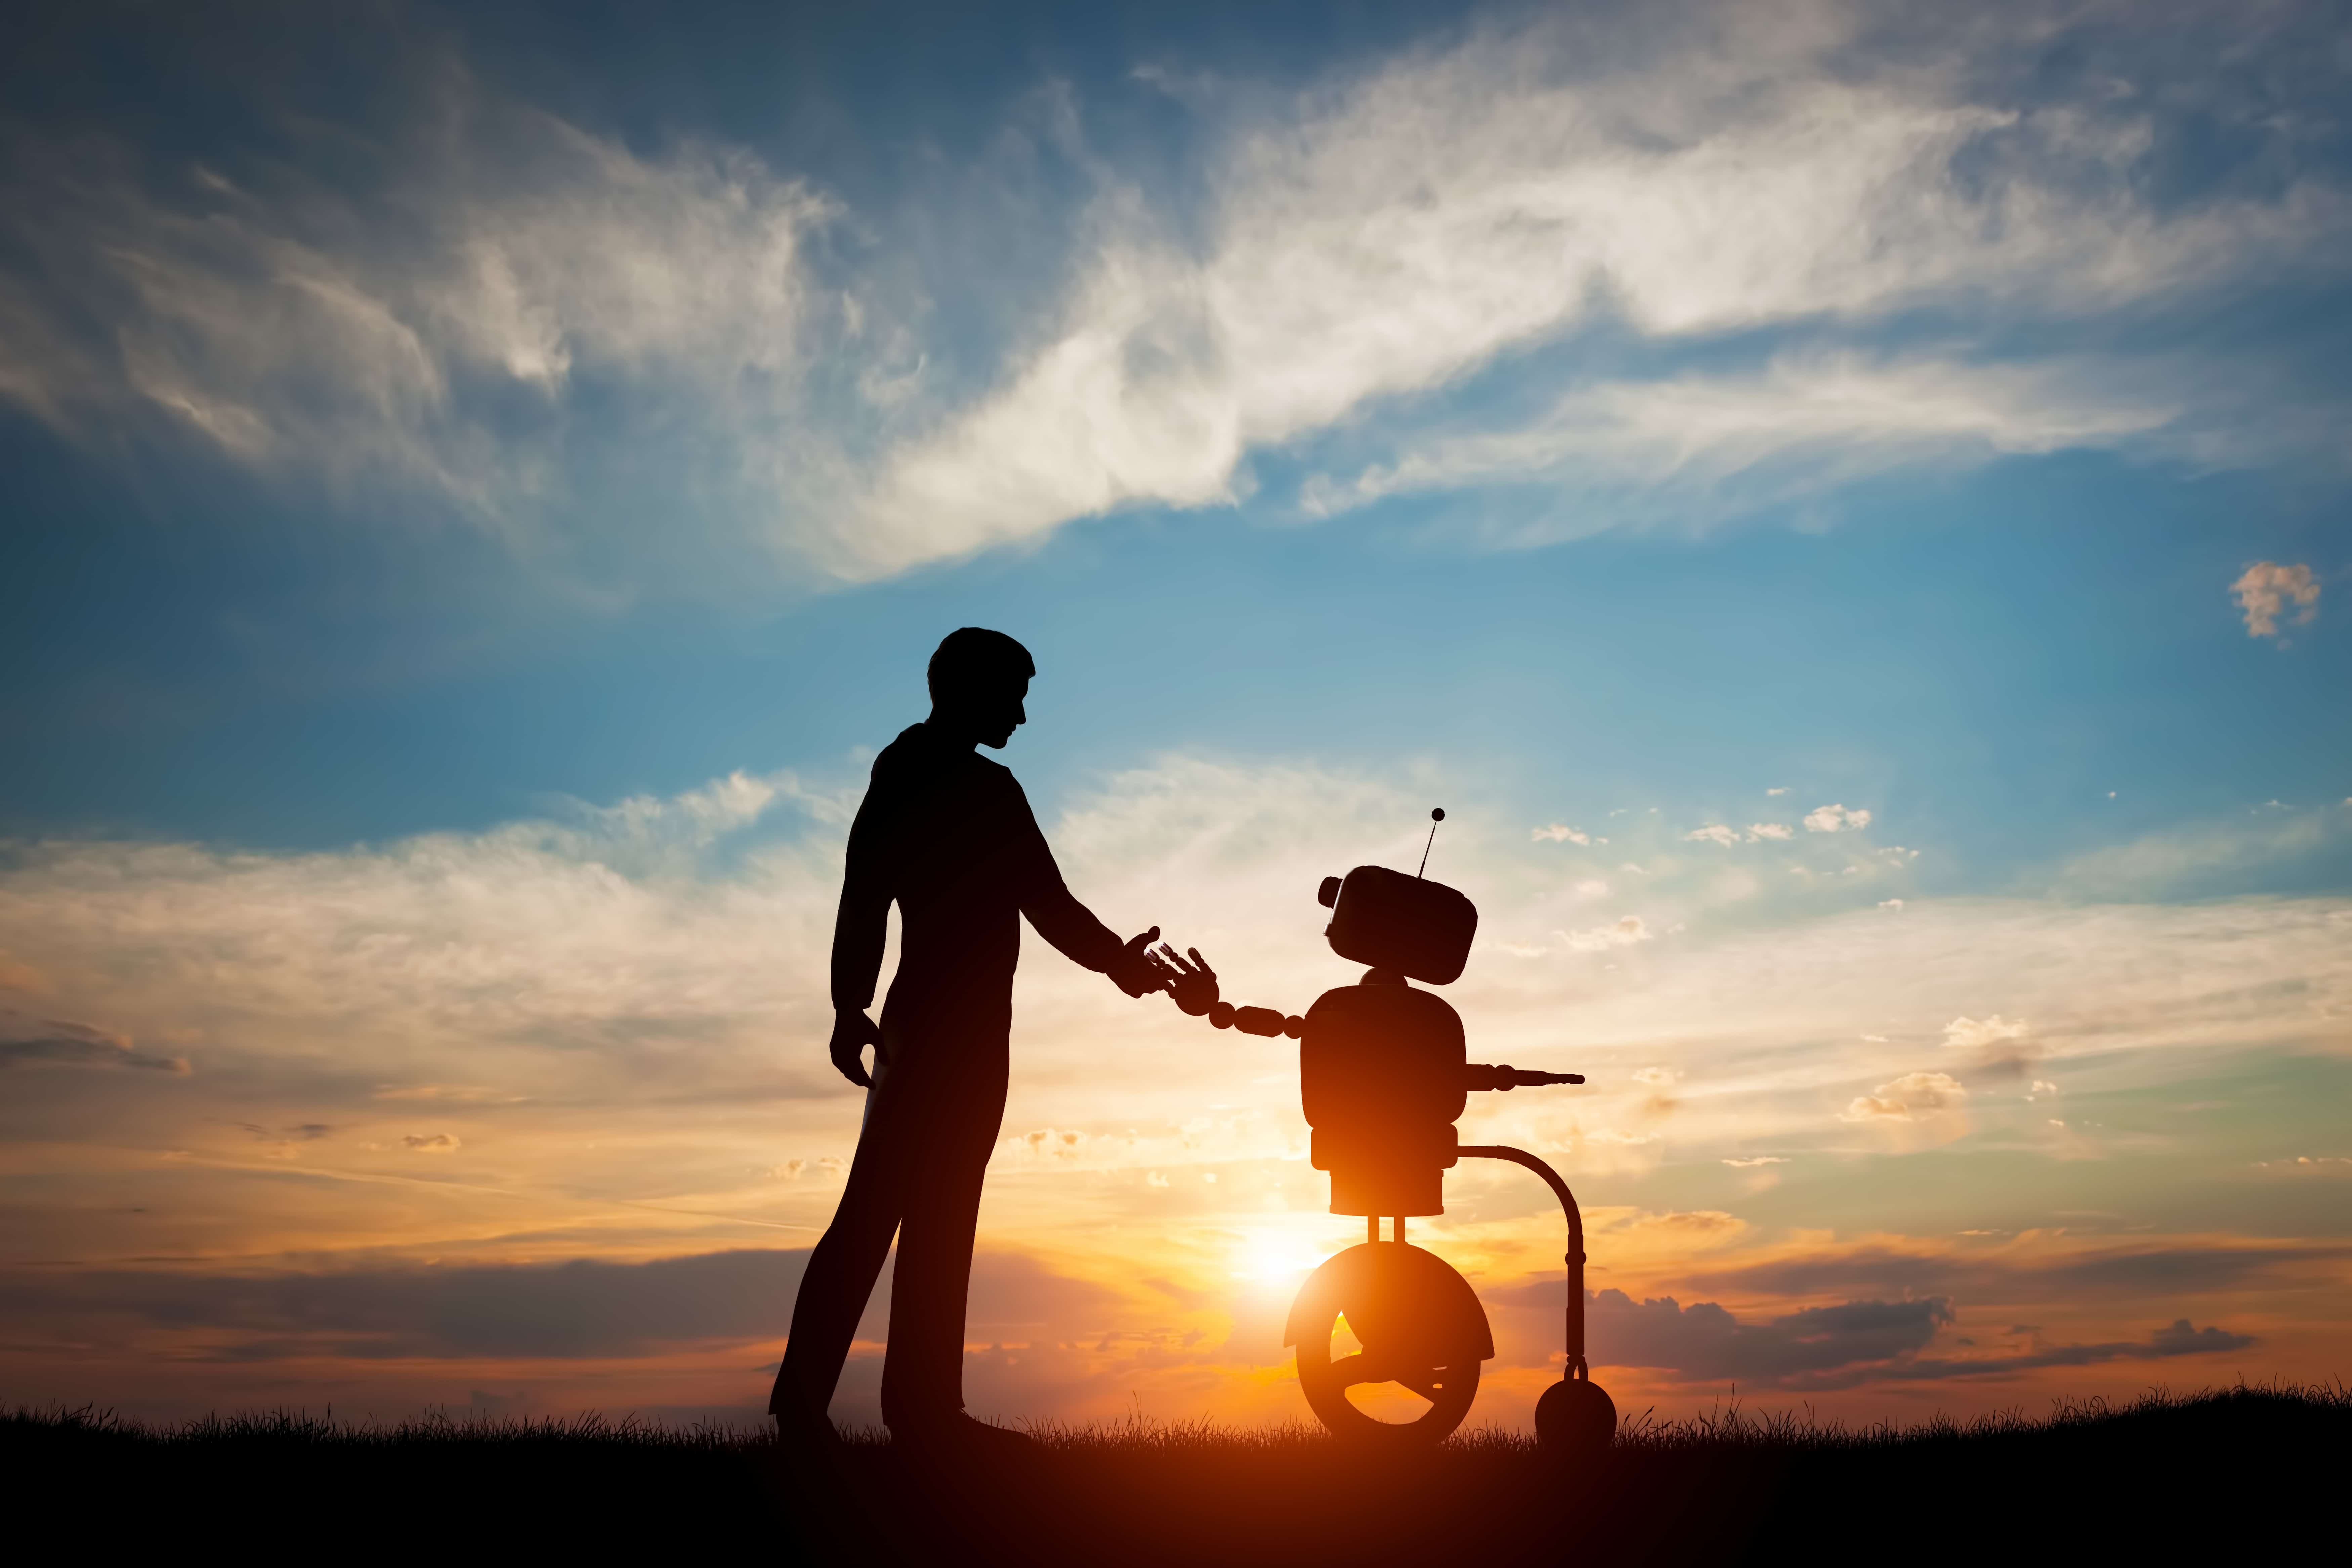 Man and robot greet